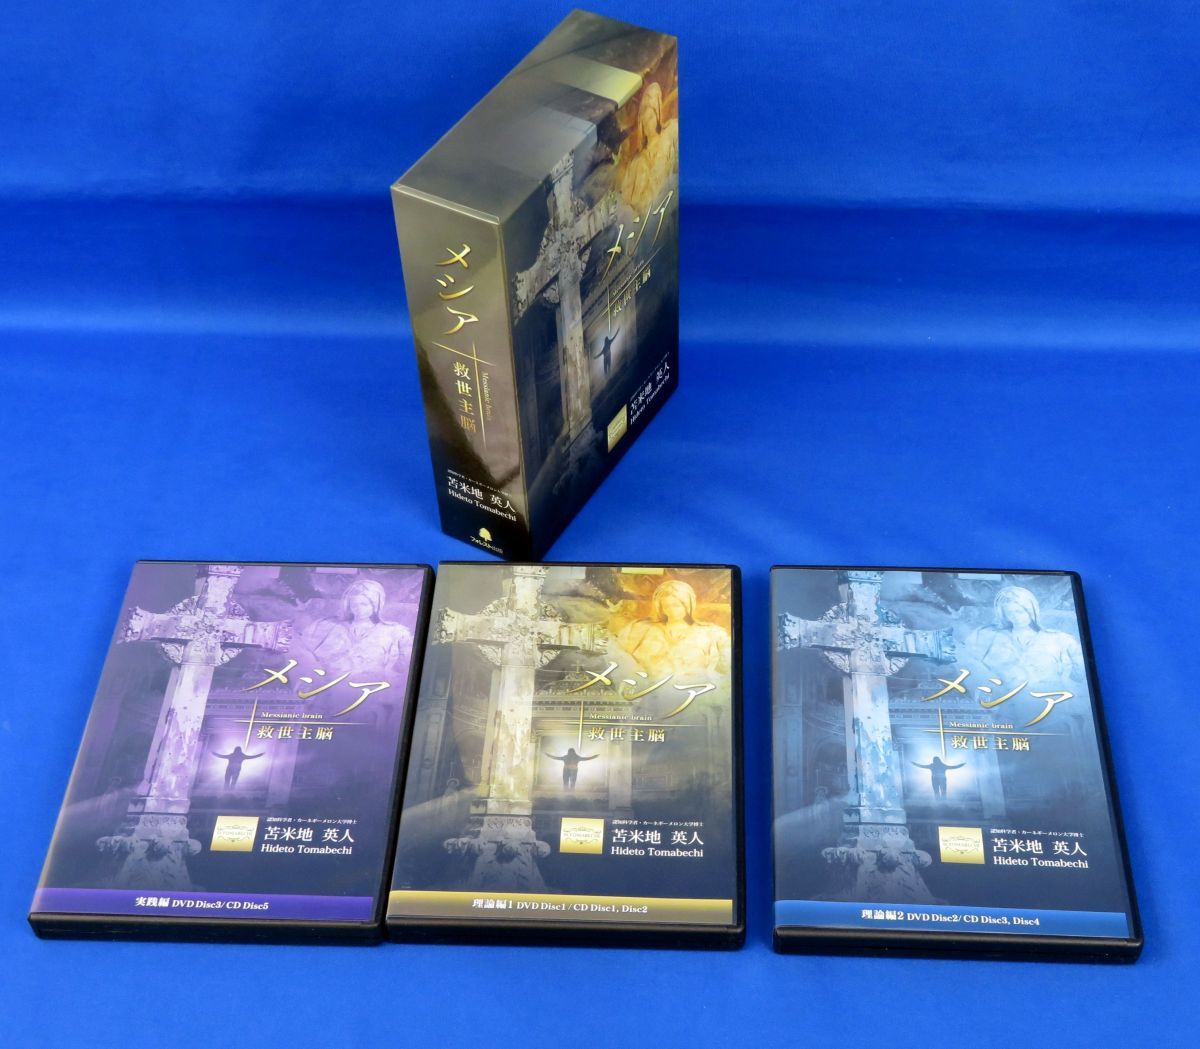 外重B2261 3DVD+5CD「メシア 救世主脳」苫米地英人 フォレスト出版/2017年製作/DVD-BOX